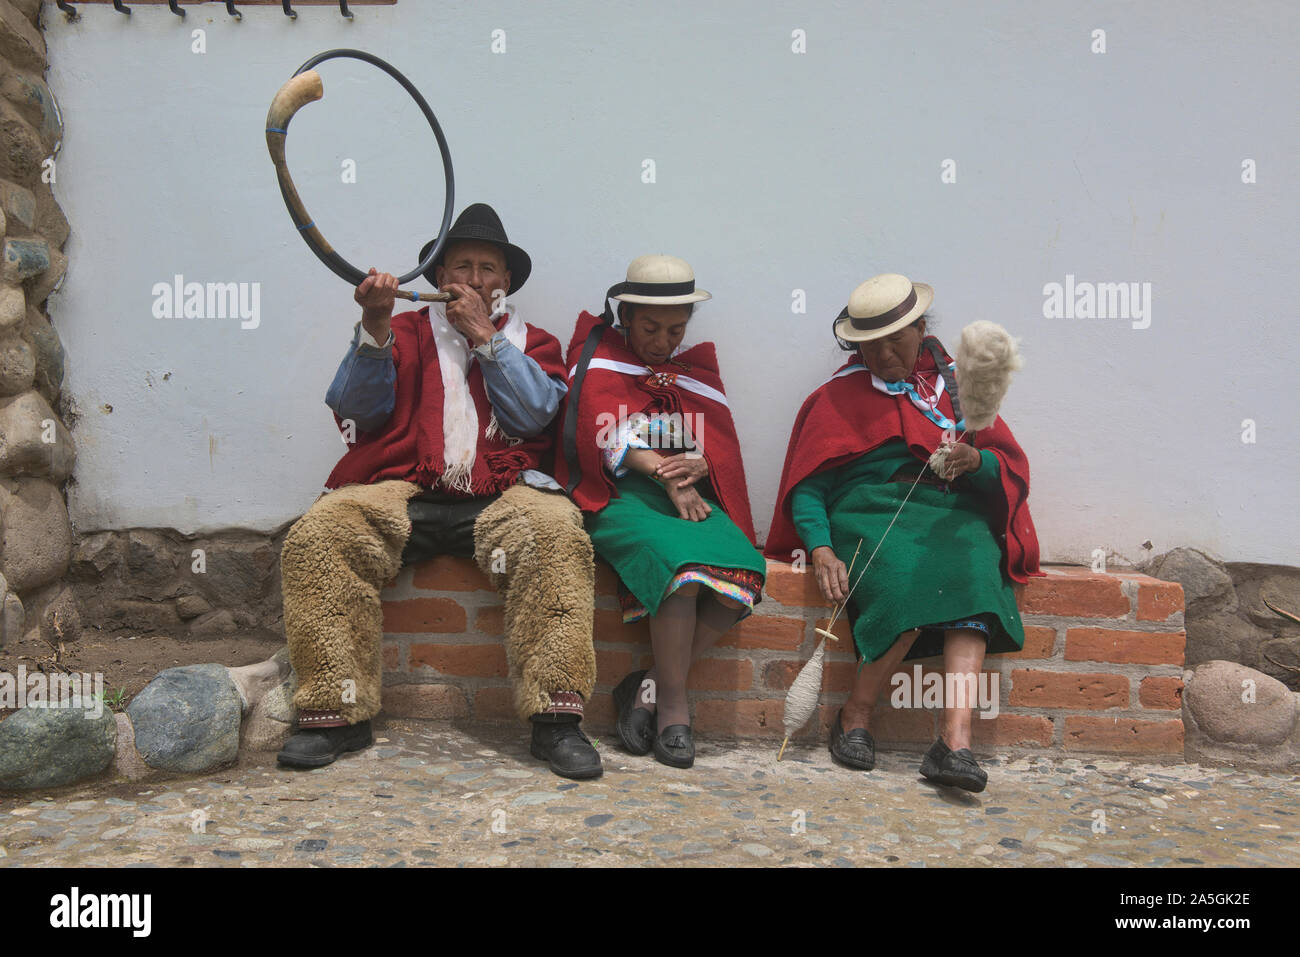 Les Highlanders et leurs traditions locales, la Moya, Equateur Banque D'Images